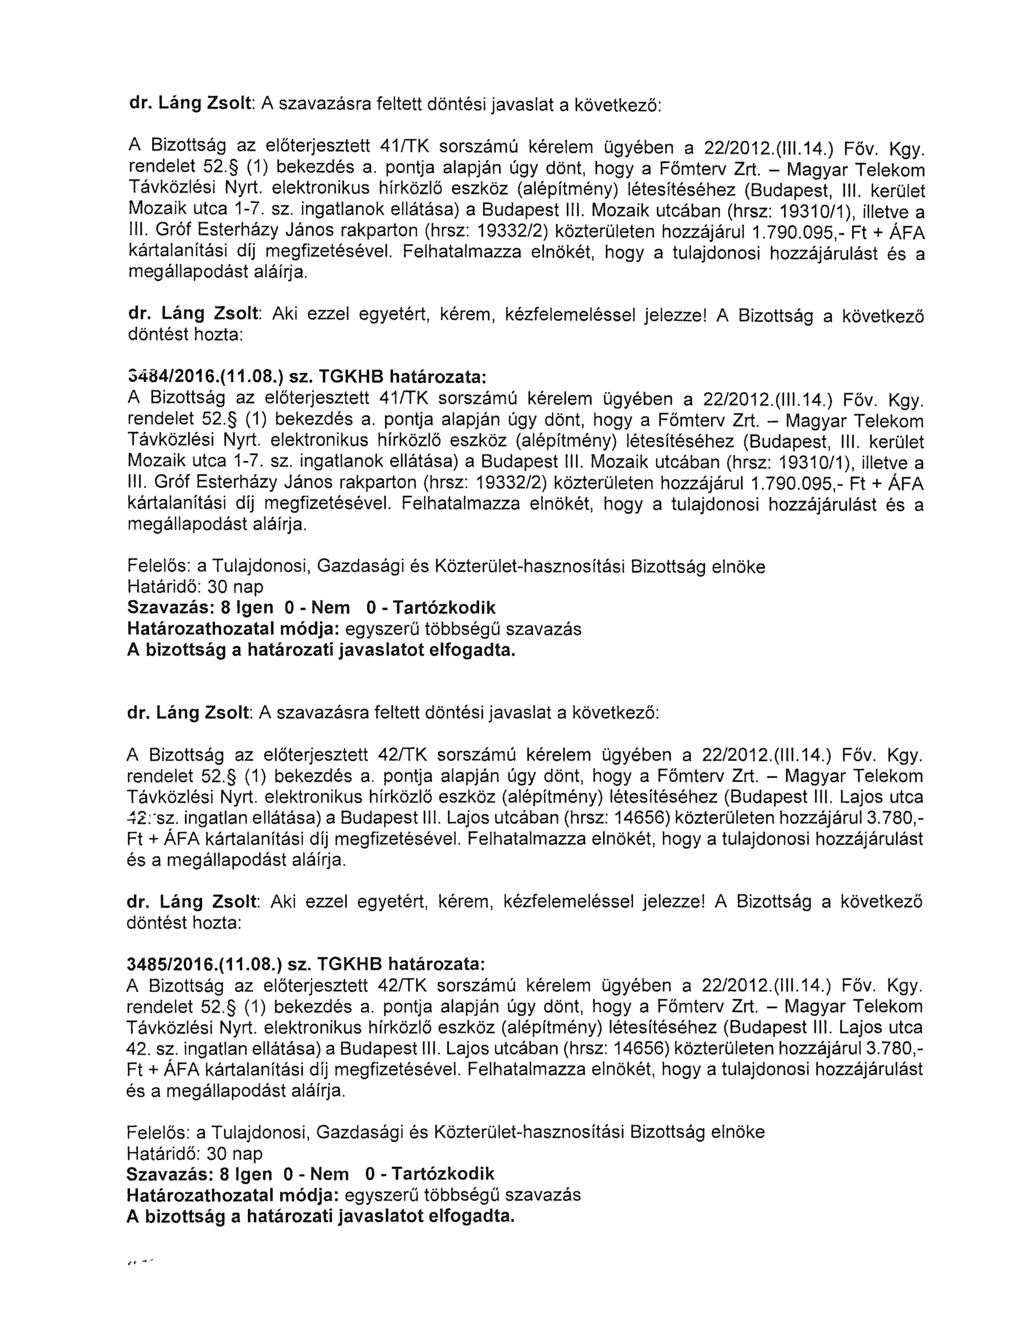 A Bizottság az előterjesztett 41/TK sorszámú kérelem ügyében a 22/2012.(111.14.) Főv. Kgy. rendelet 52. (1) bekezdés a. pontja alapján úgy dönt, hogy a Főmterv Zrt. - Magyar Telekom Távközlési Nyrt.